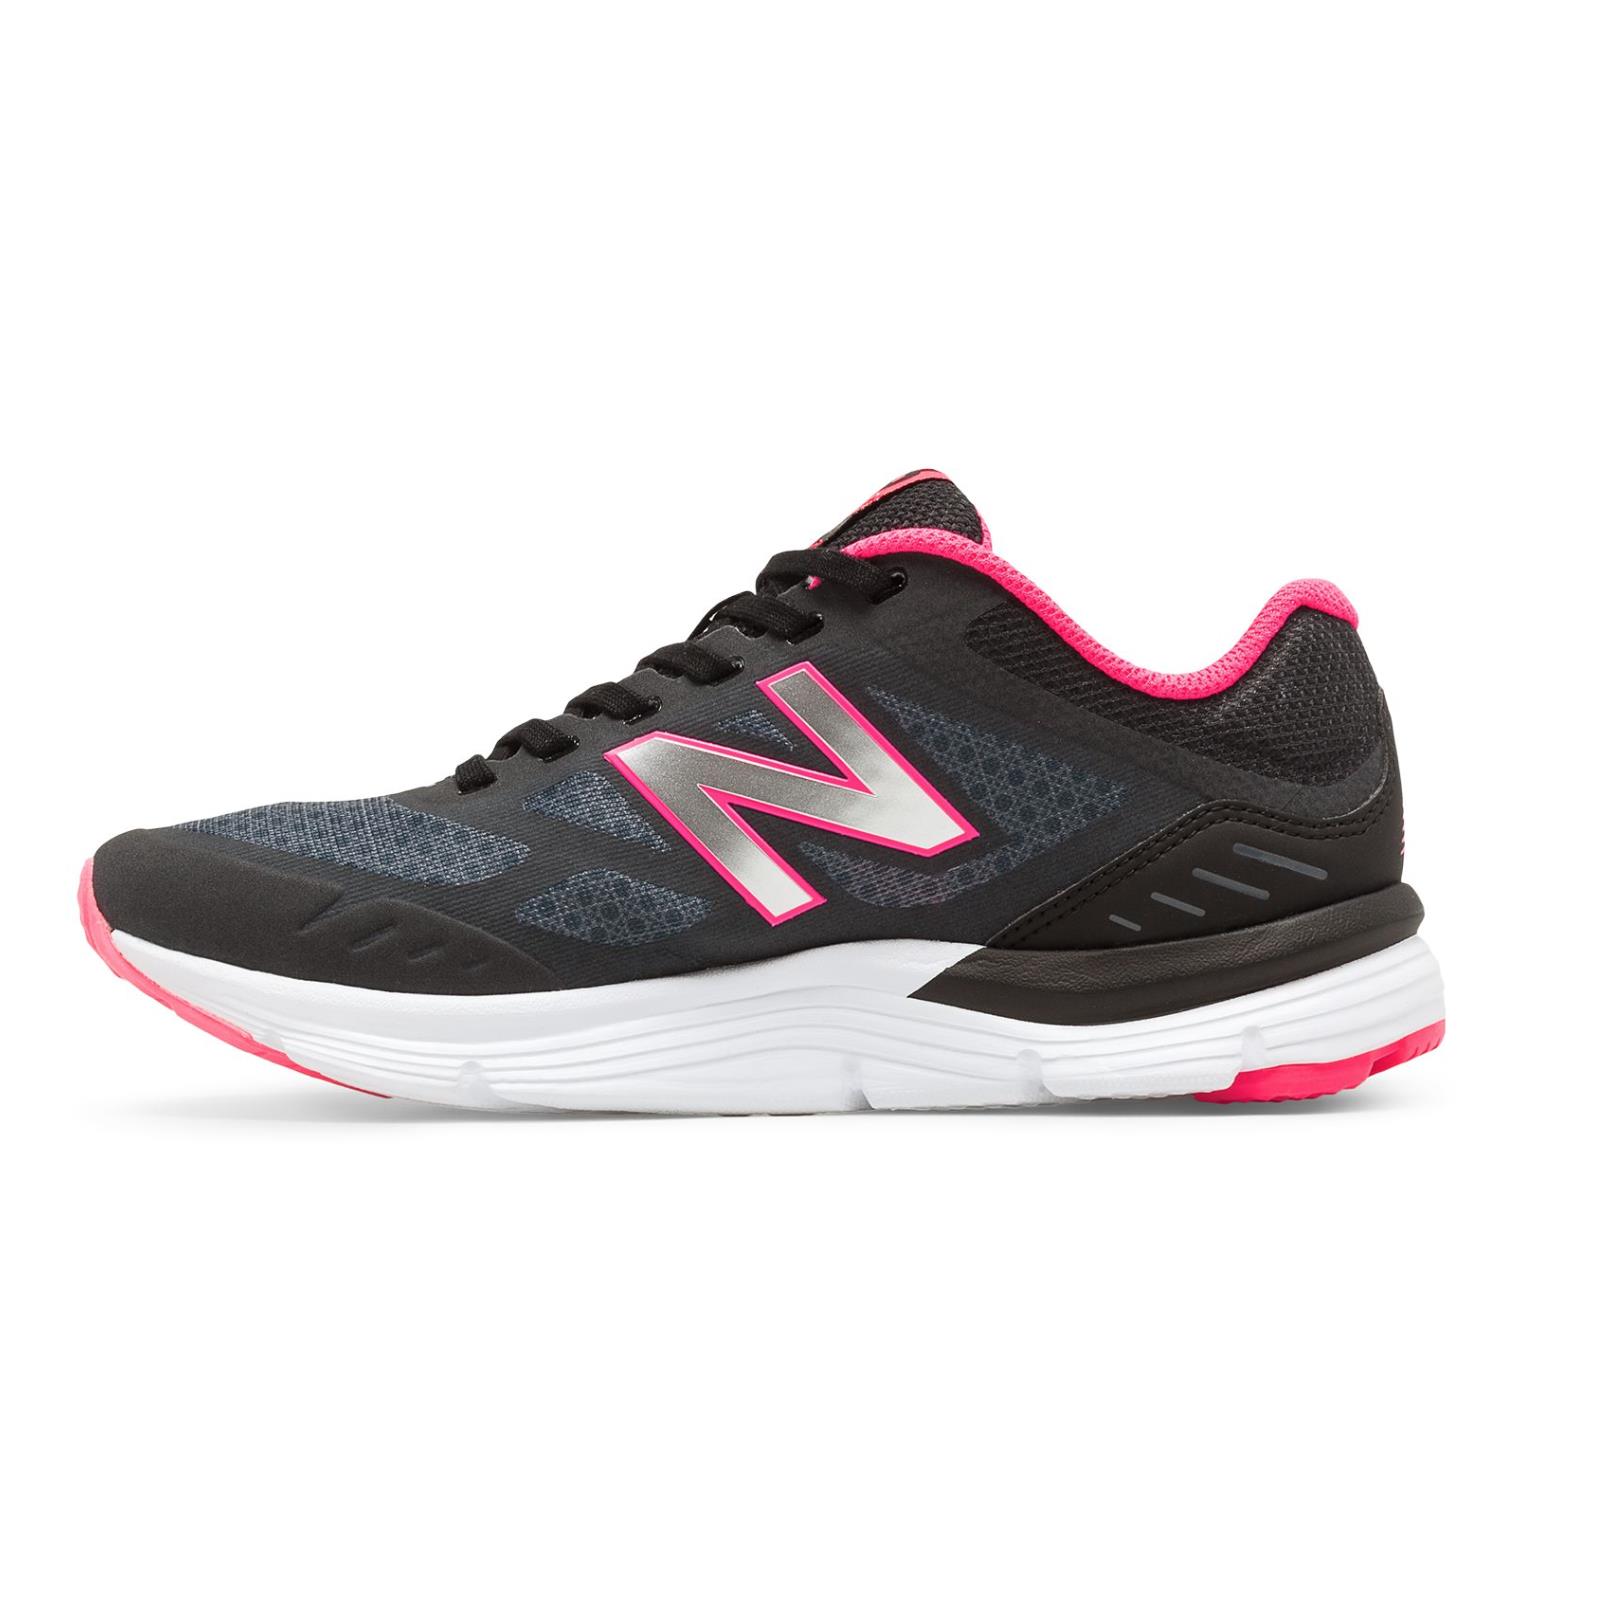 New Balance 775v3 Running Course Shoes Black Women Sz 11 B N3625